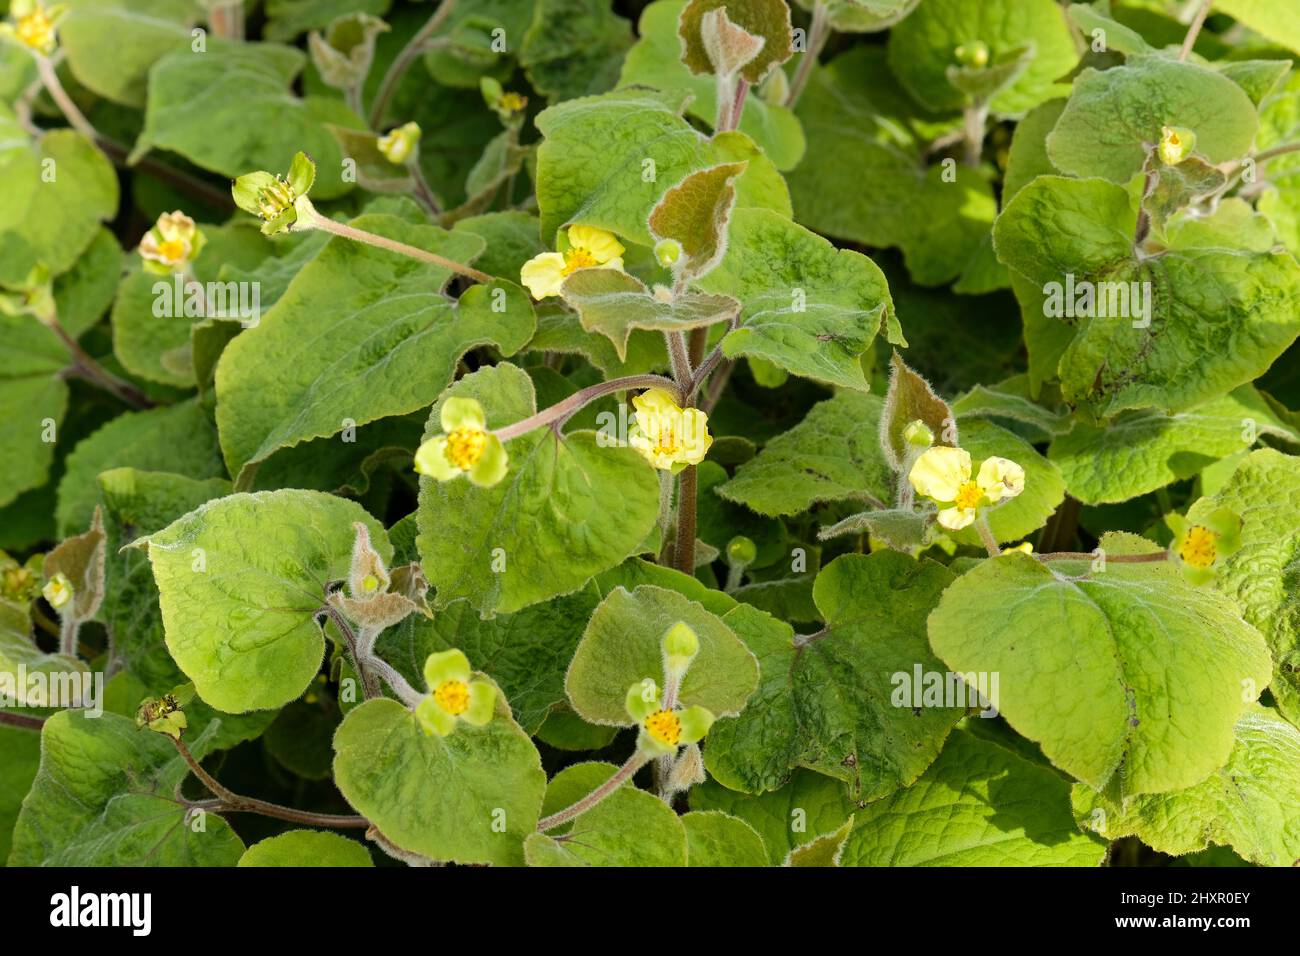 Saruma henryi, aufrechter wilder Ingwer. Gelbe, dreiblättrige Blüten. Stockfoto